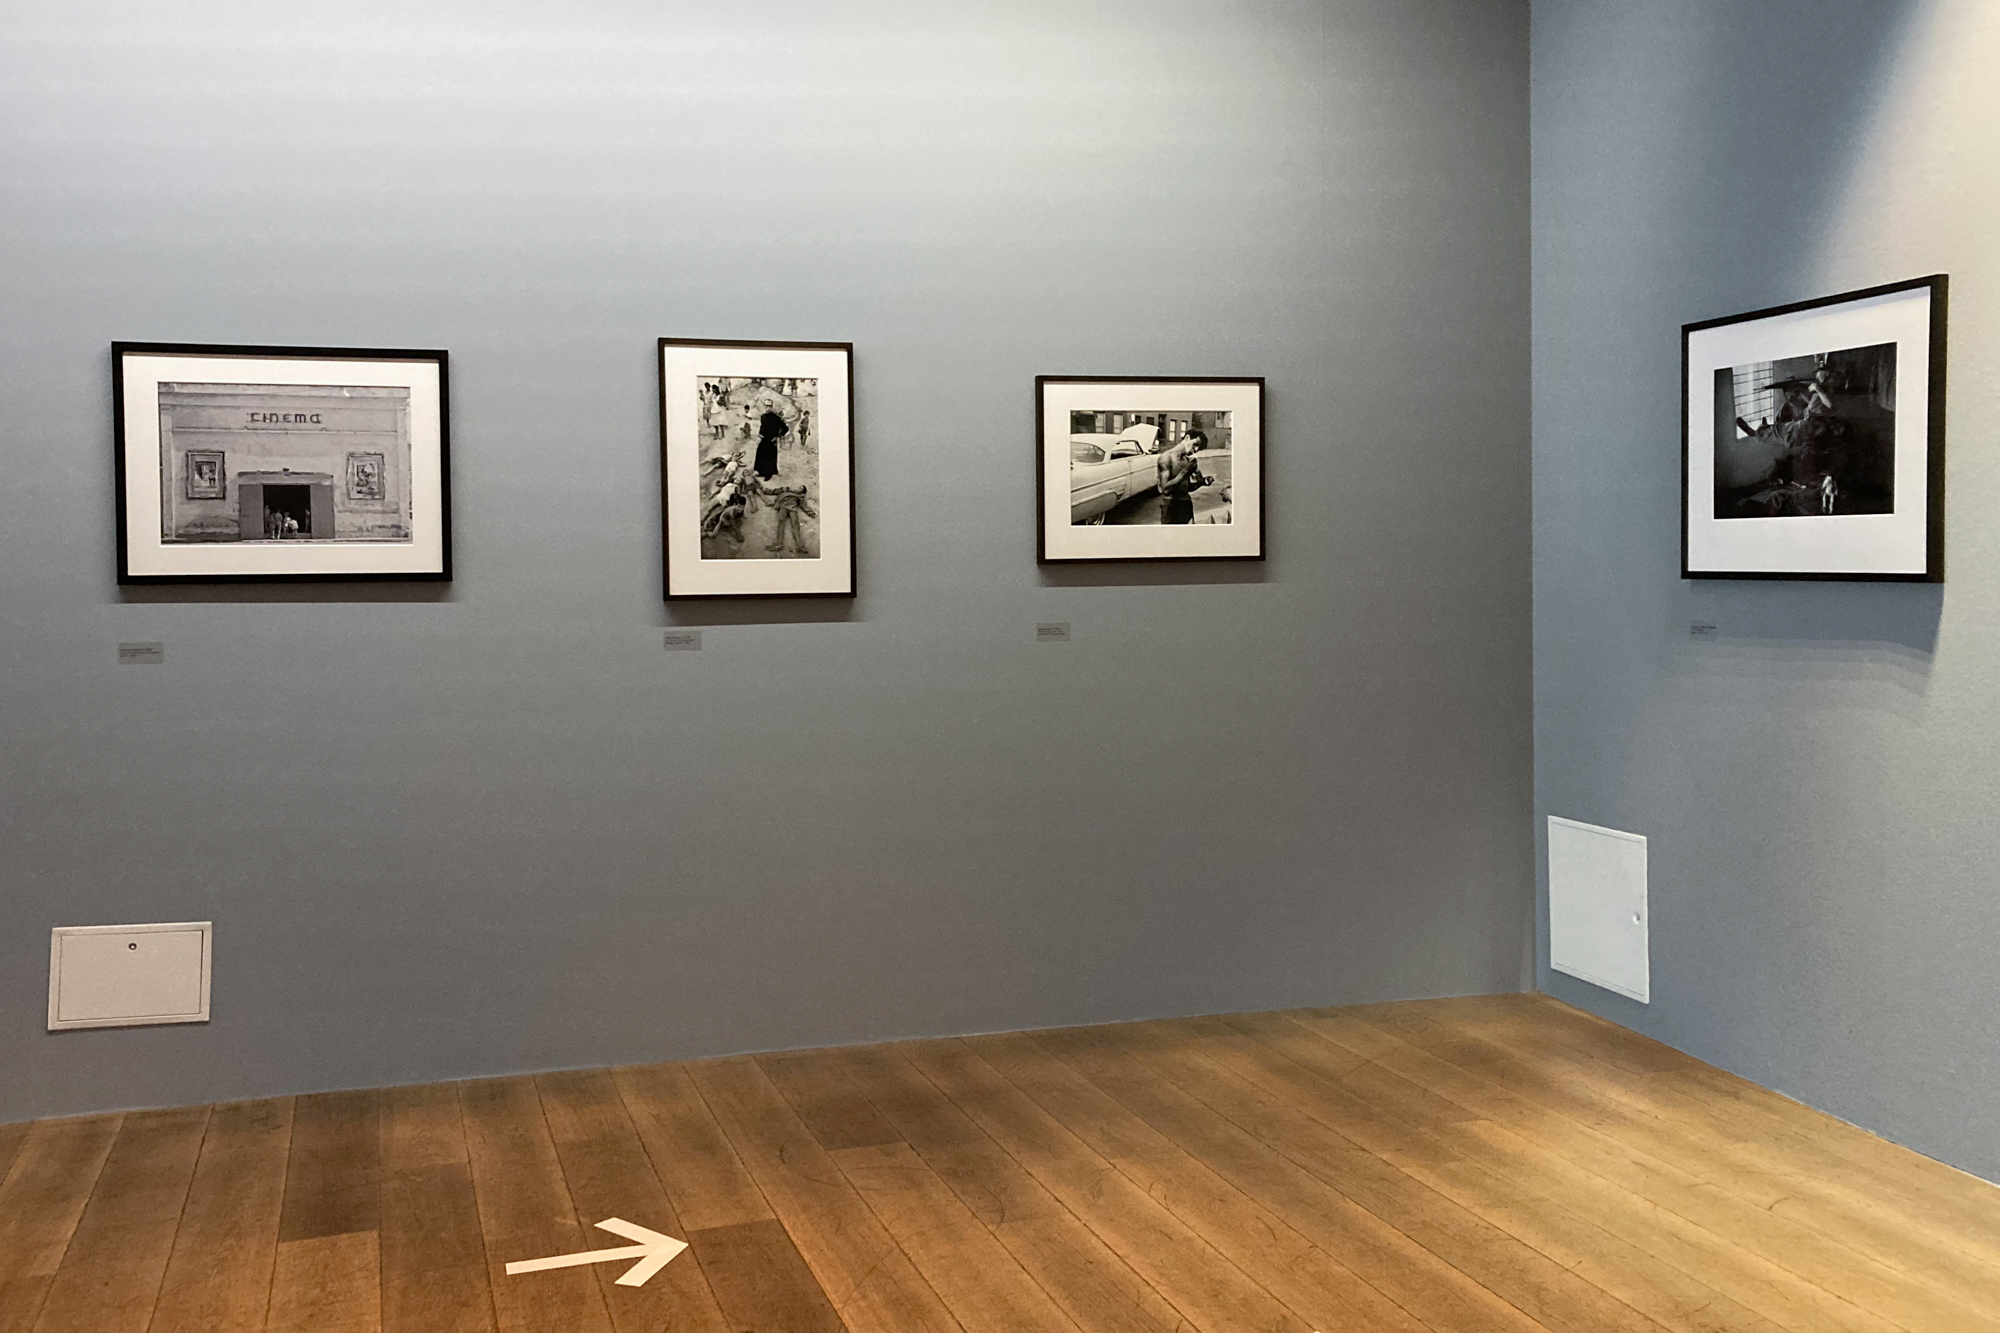 Ausstellungsfoto, welches graue Wände und Parkettboden zeigt. An den Wänden hängen schwarzgerahmte Ausstellungsstücke.